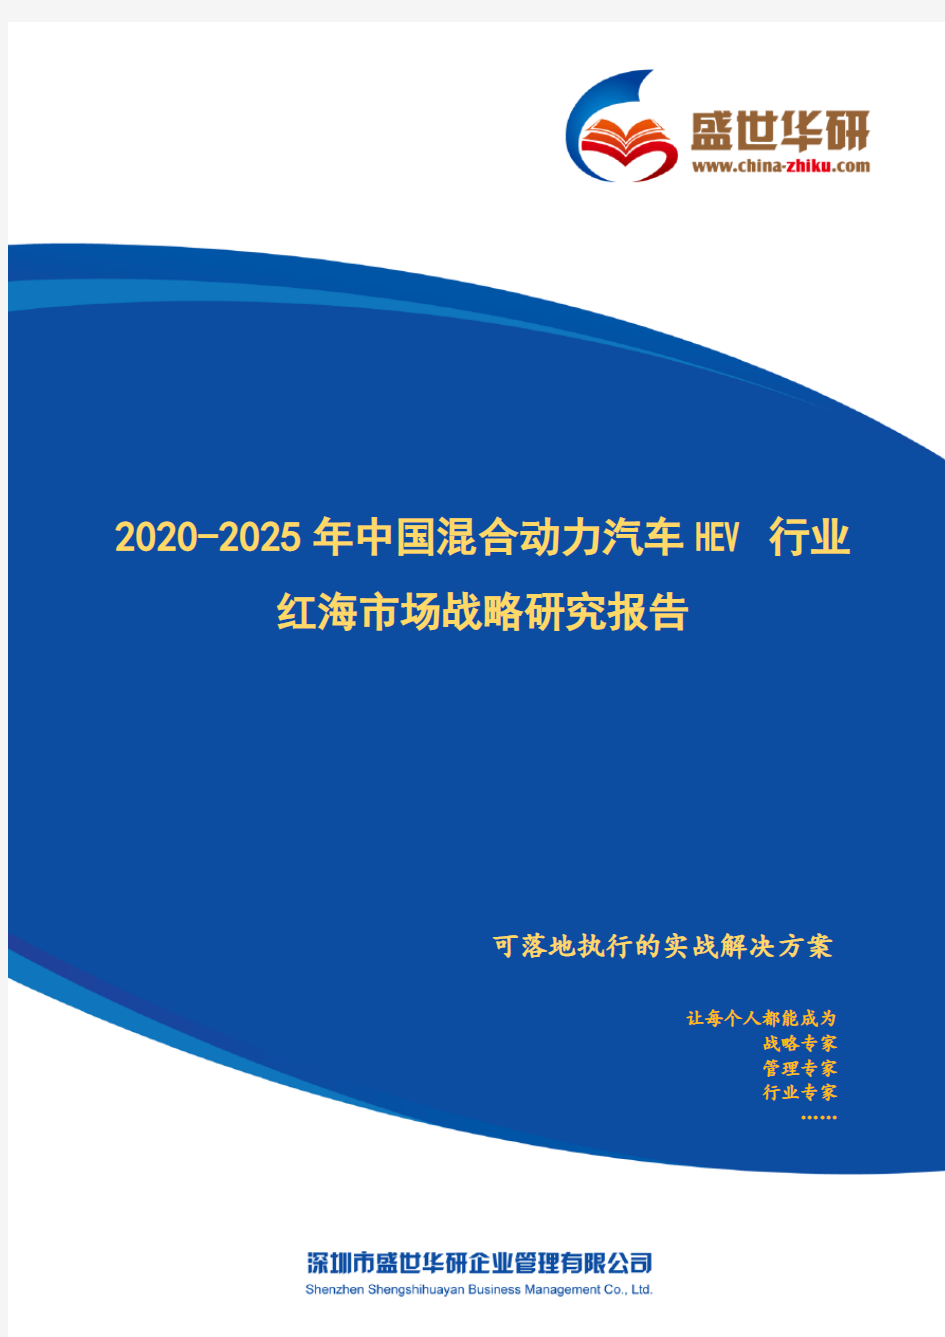 【完整版】2020-2025年中国混合动力汽车HEV行业红海市场战略研究报告